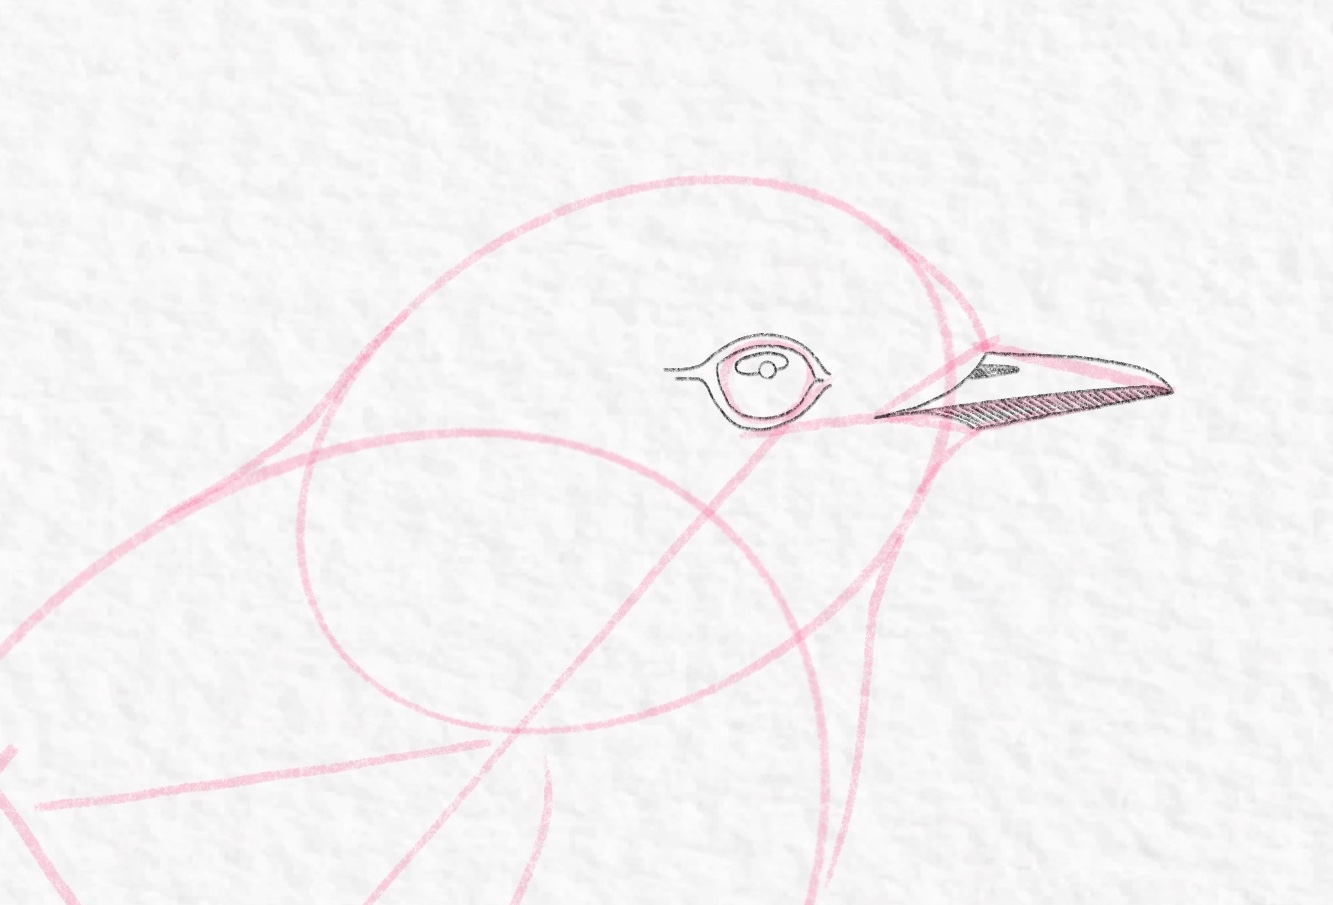 Sketching Birds – Flexing My Wings